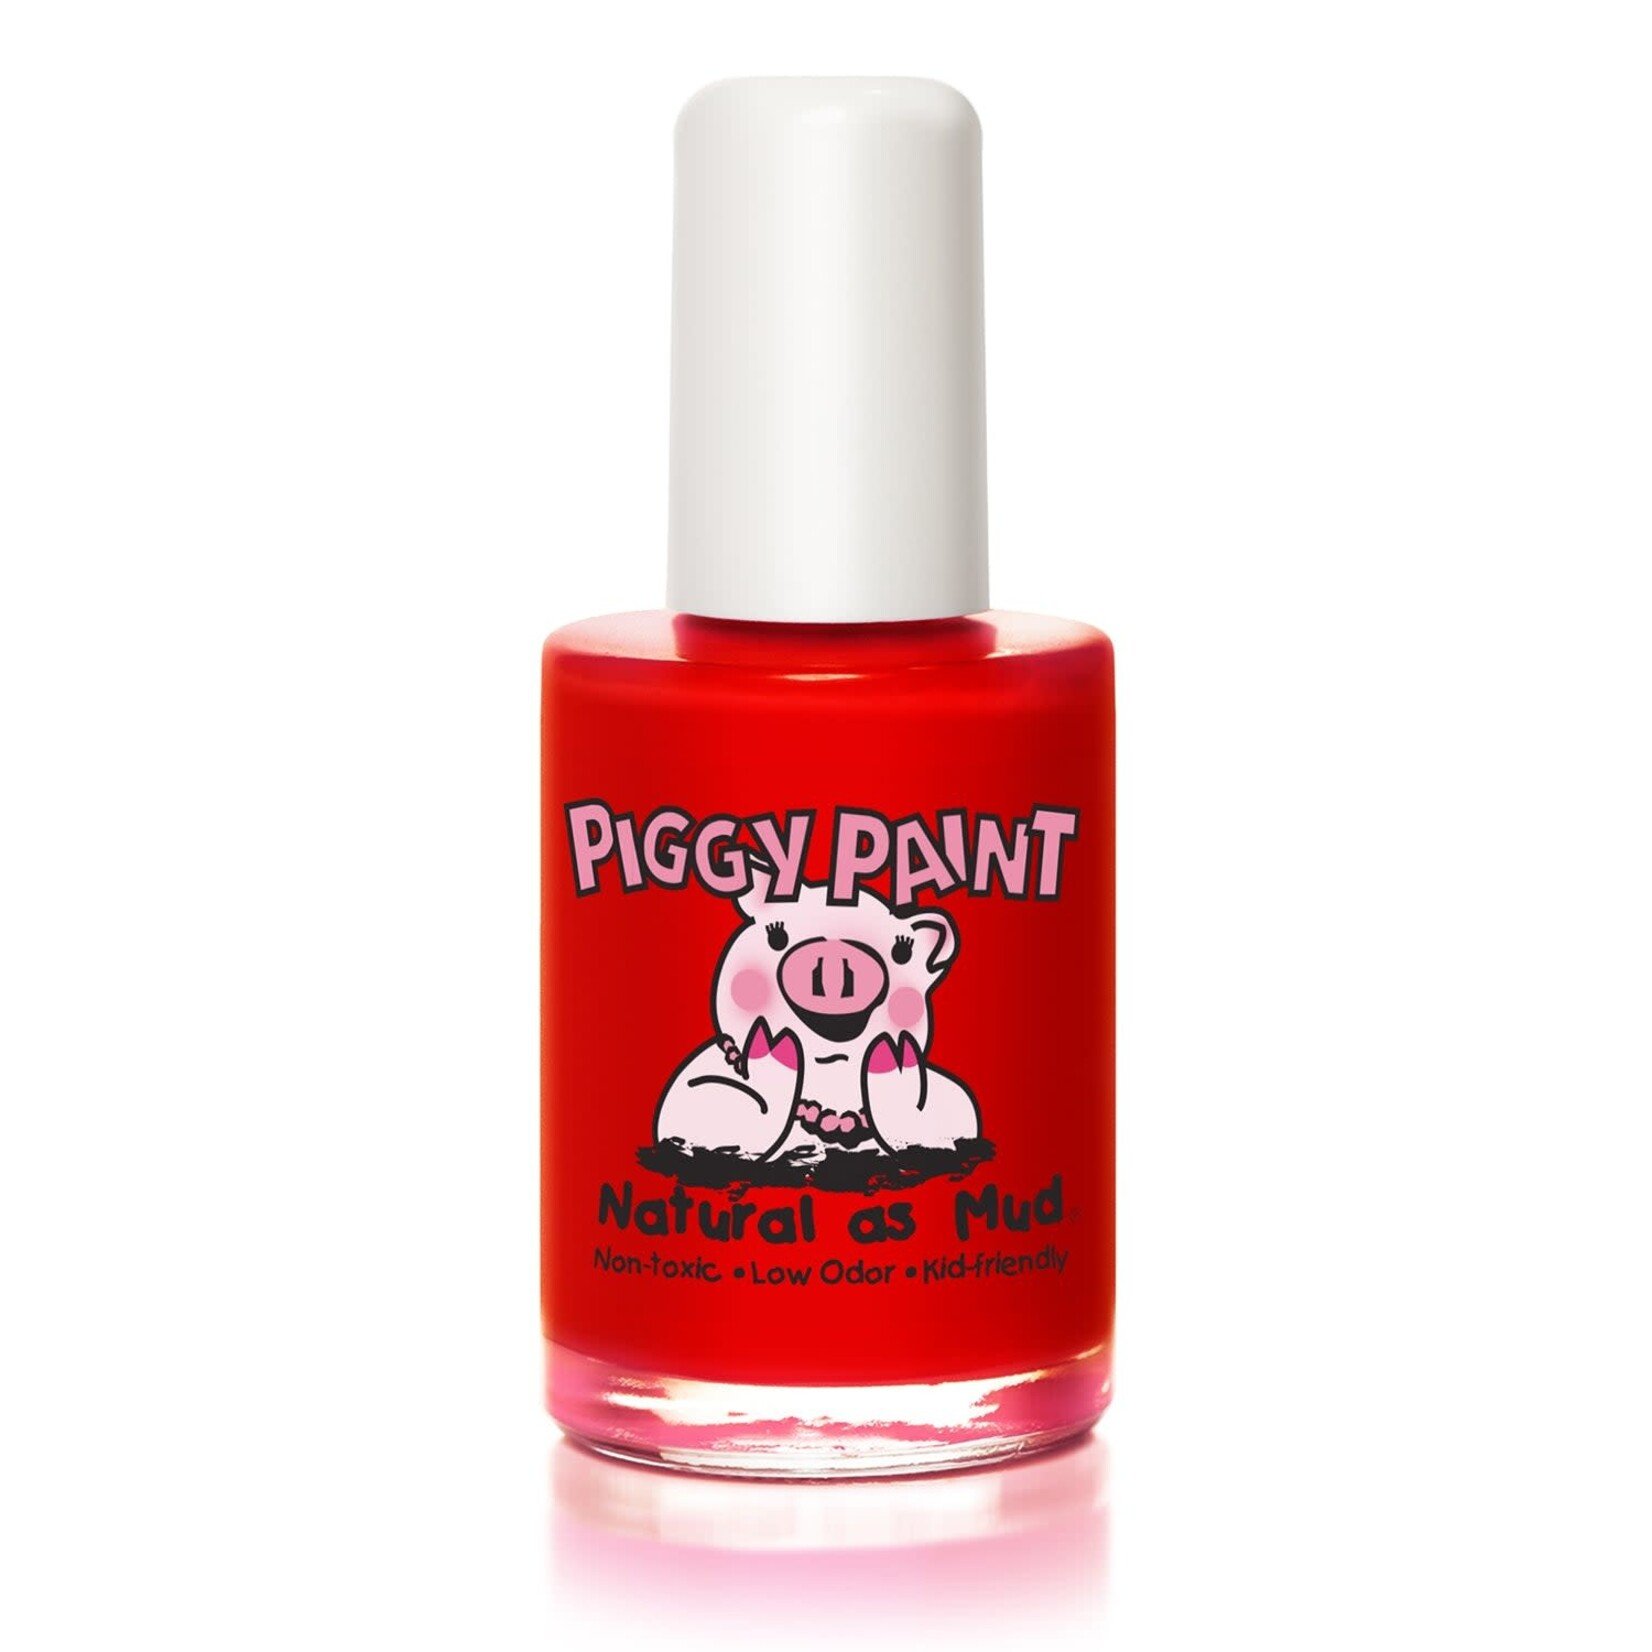 piggy paint large piggy paint